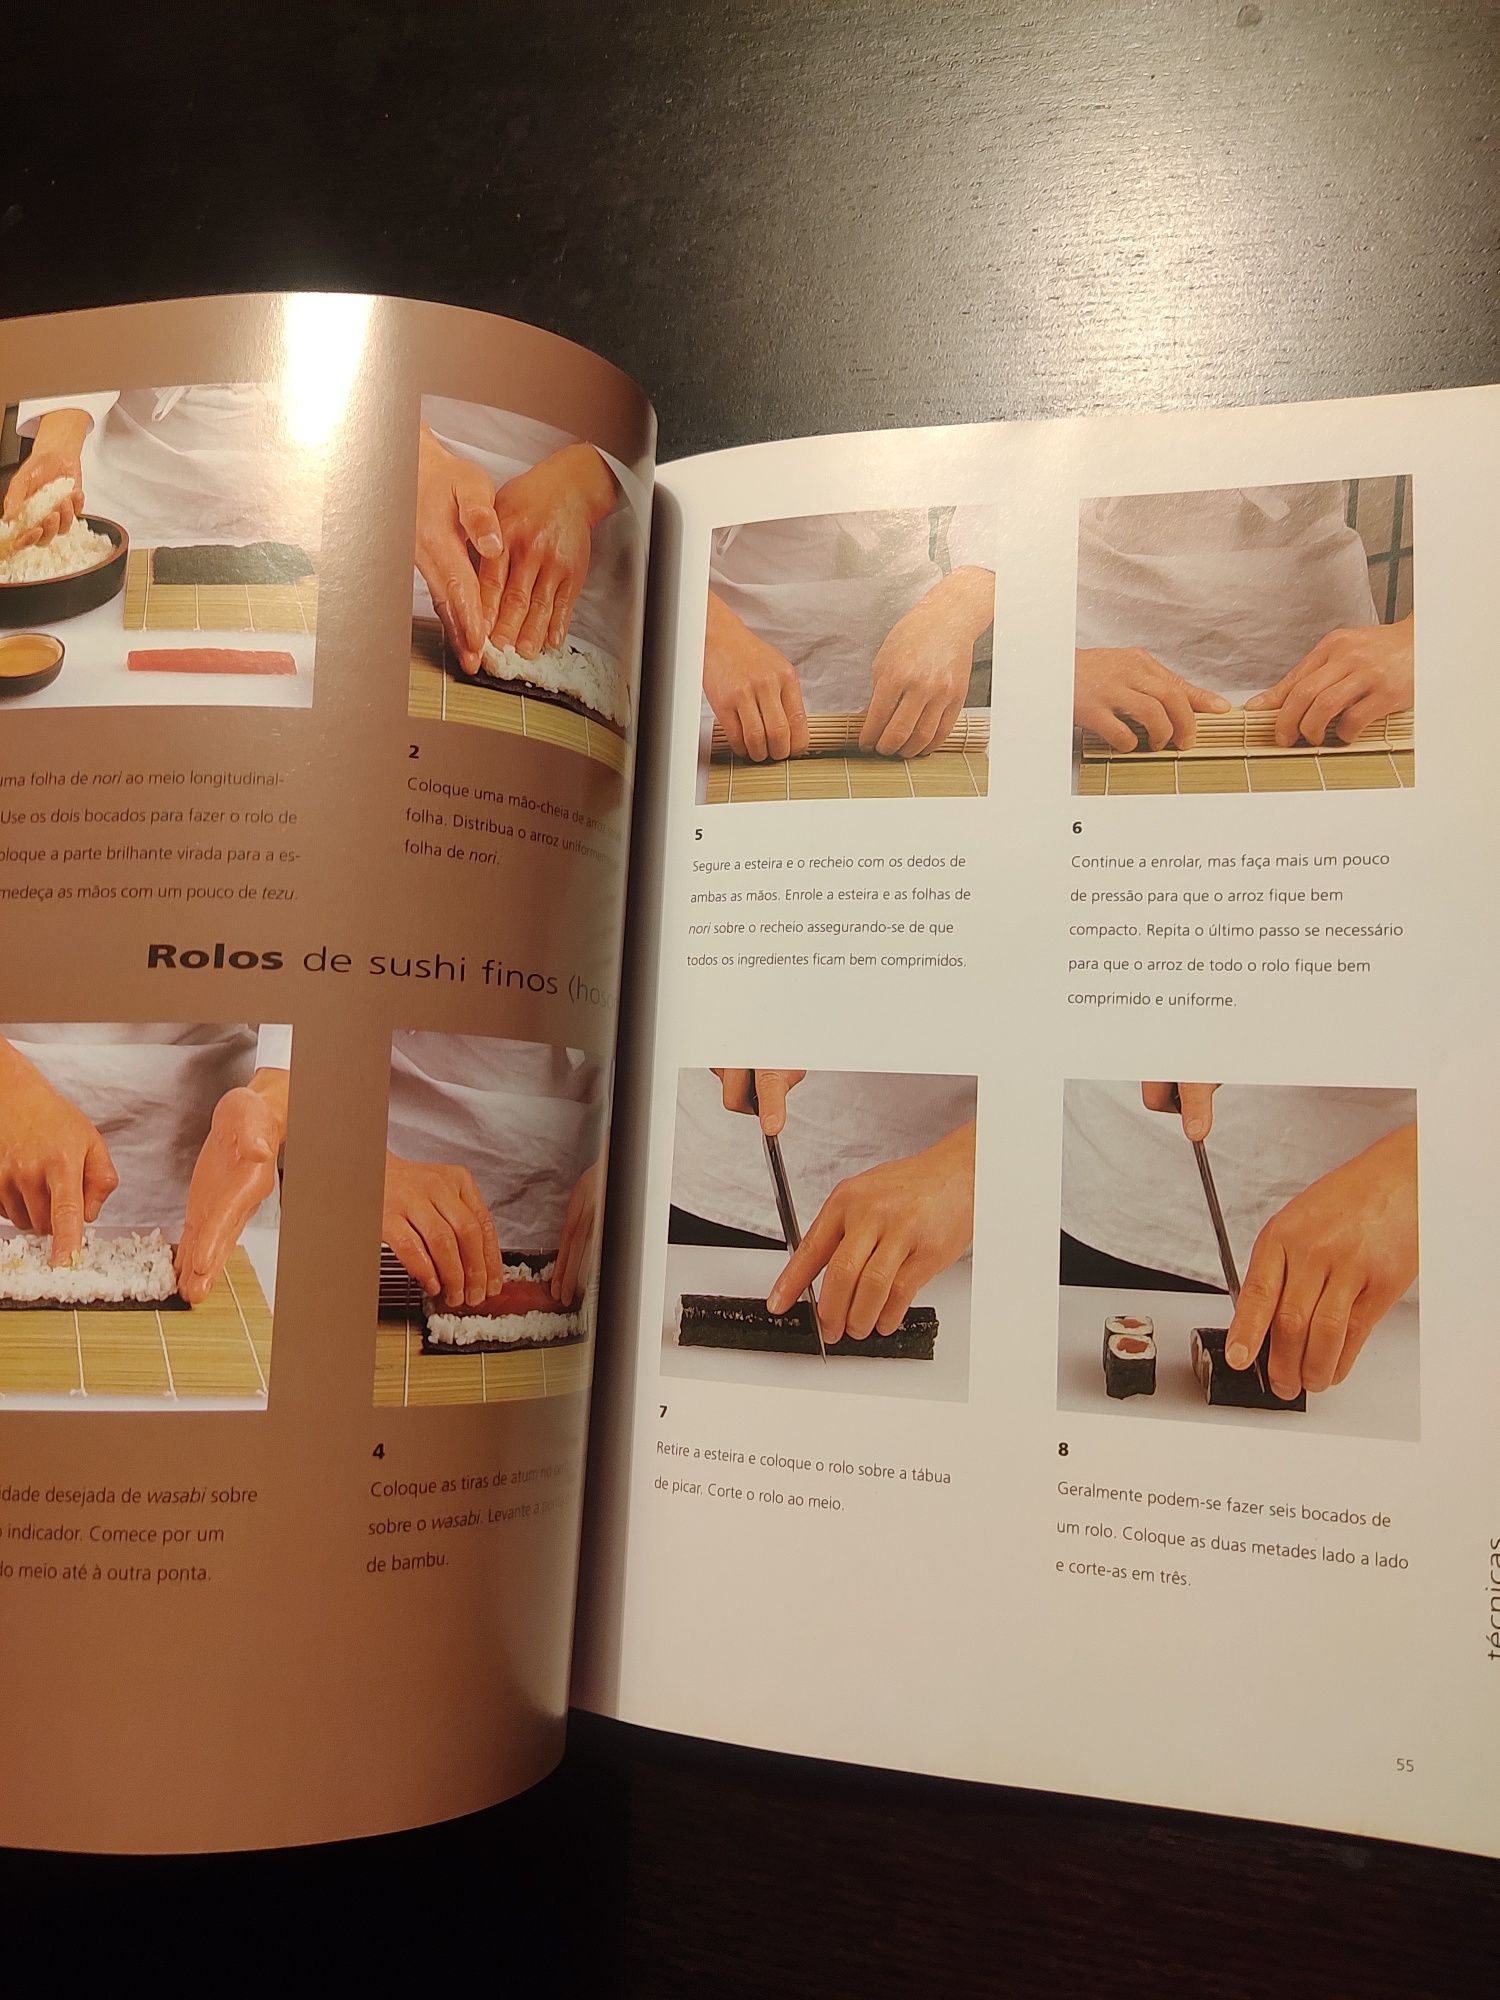 Livro Sushi e Sashimi - cozinha criativa